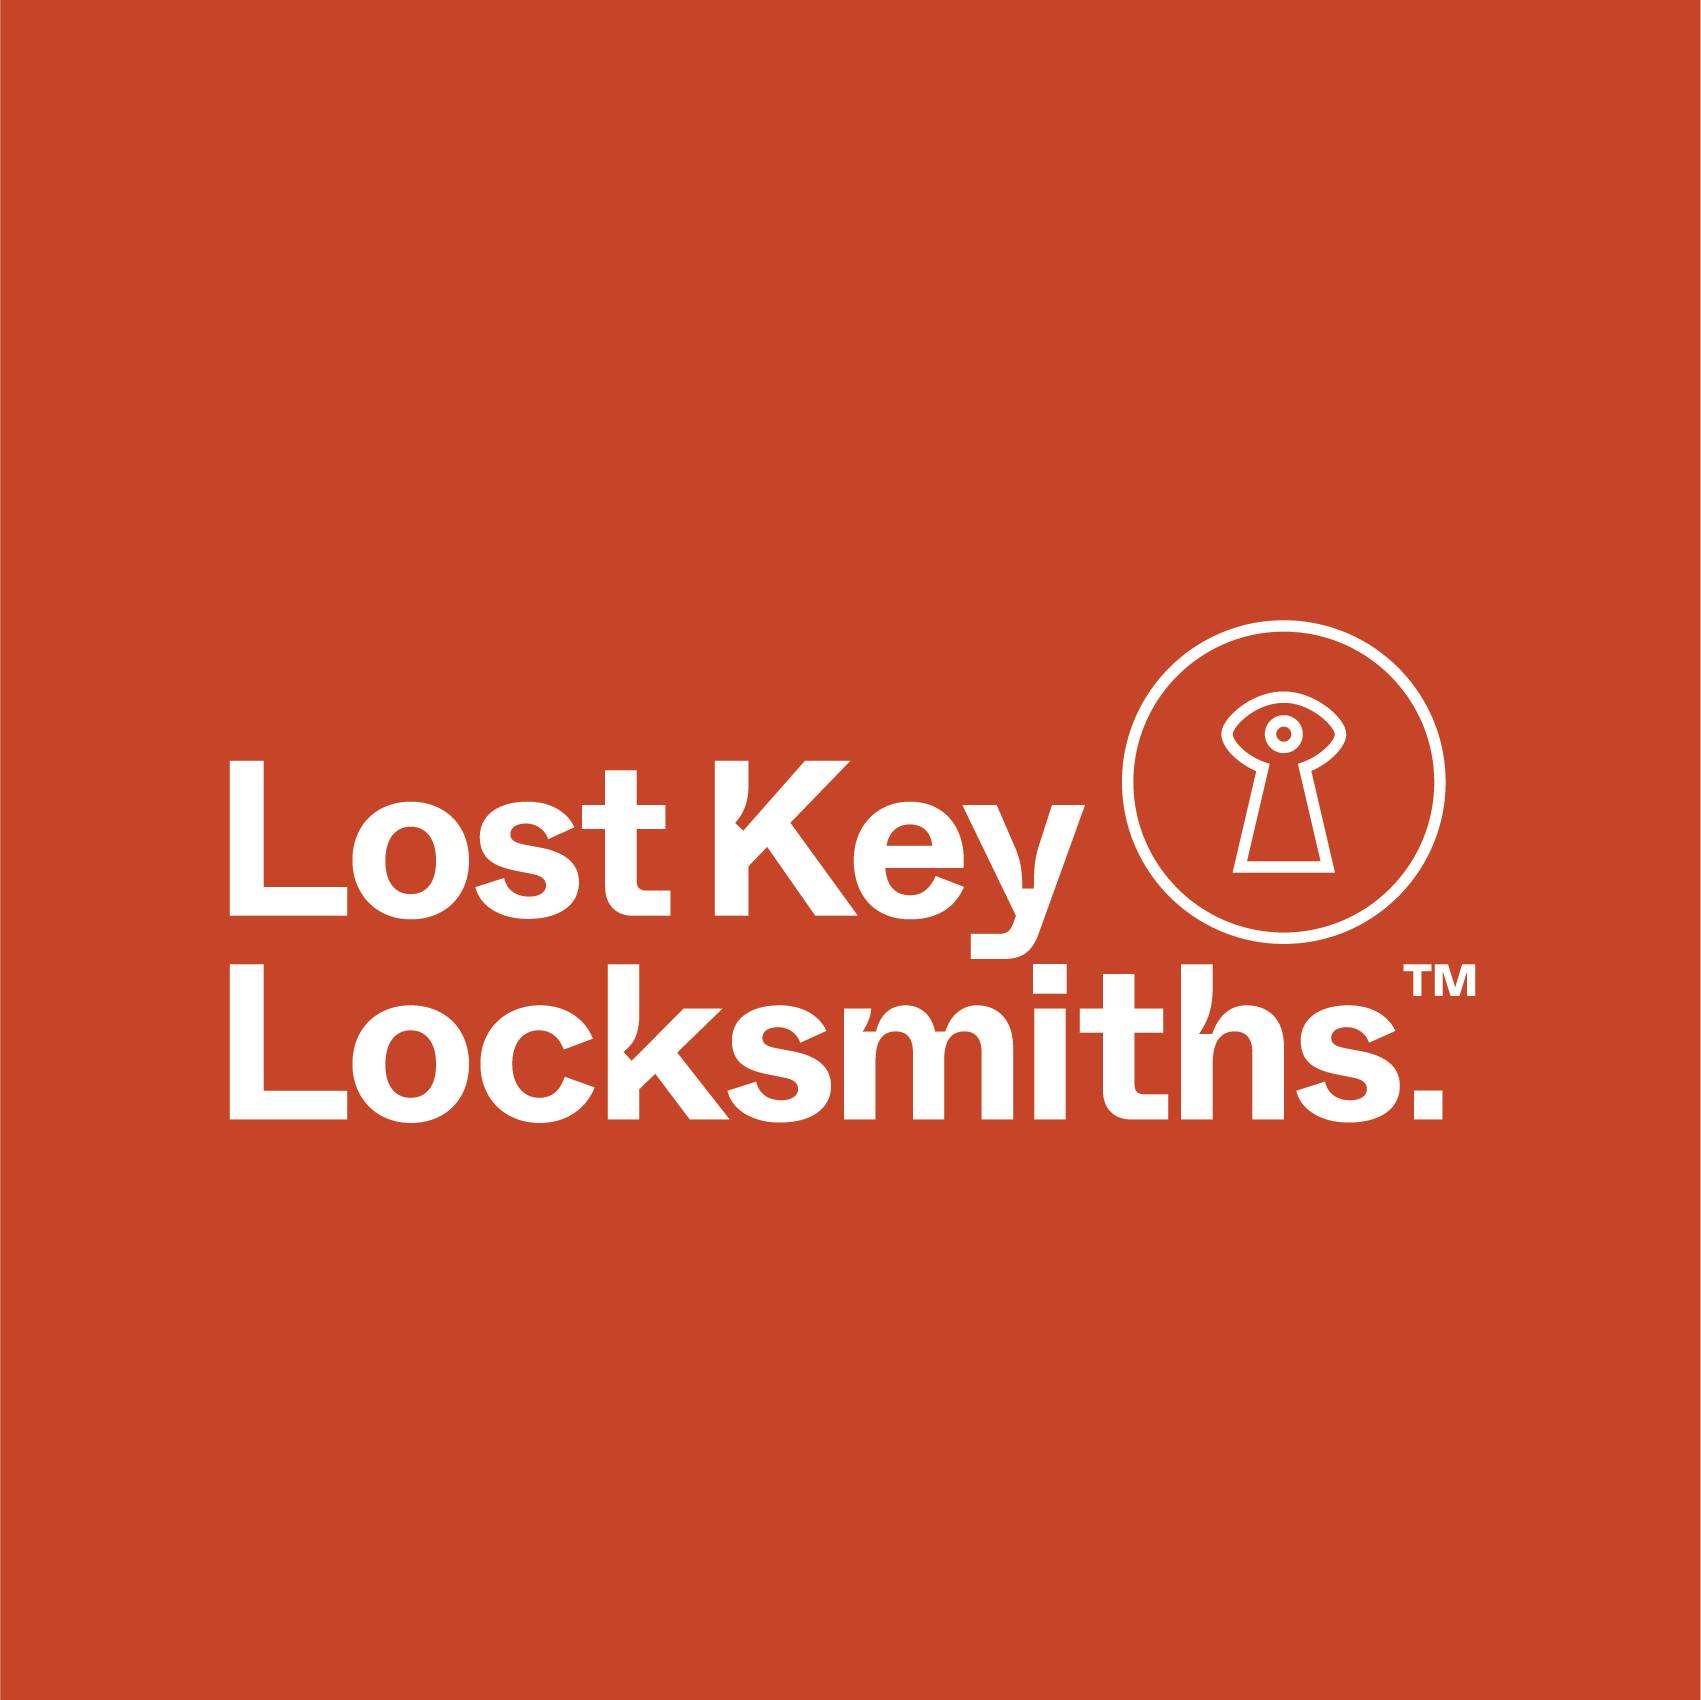 Lost Key Locksmiths